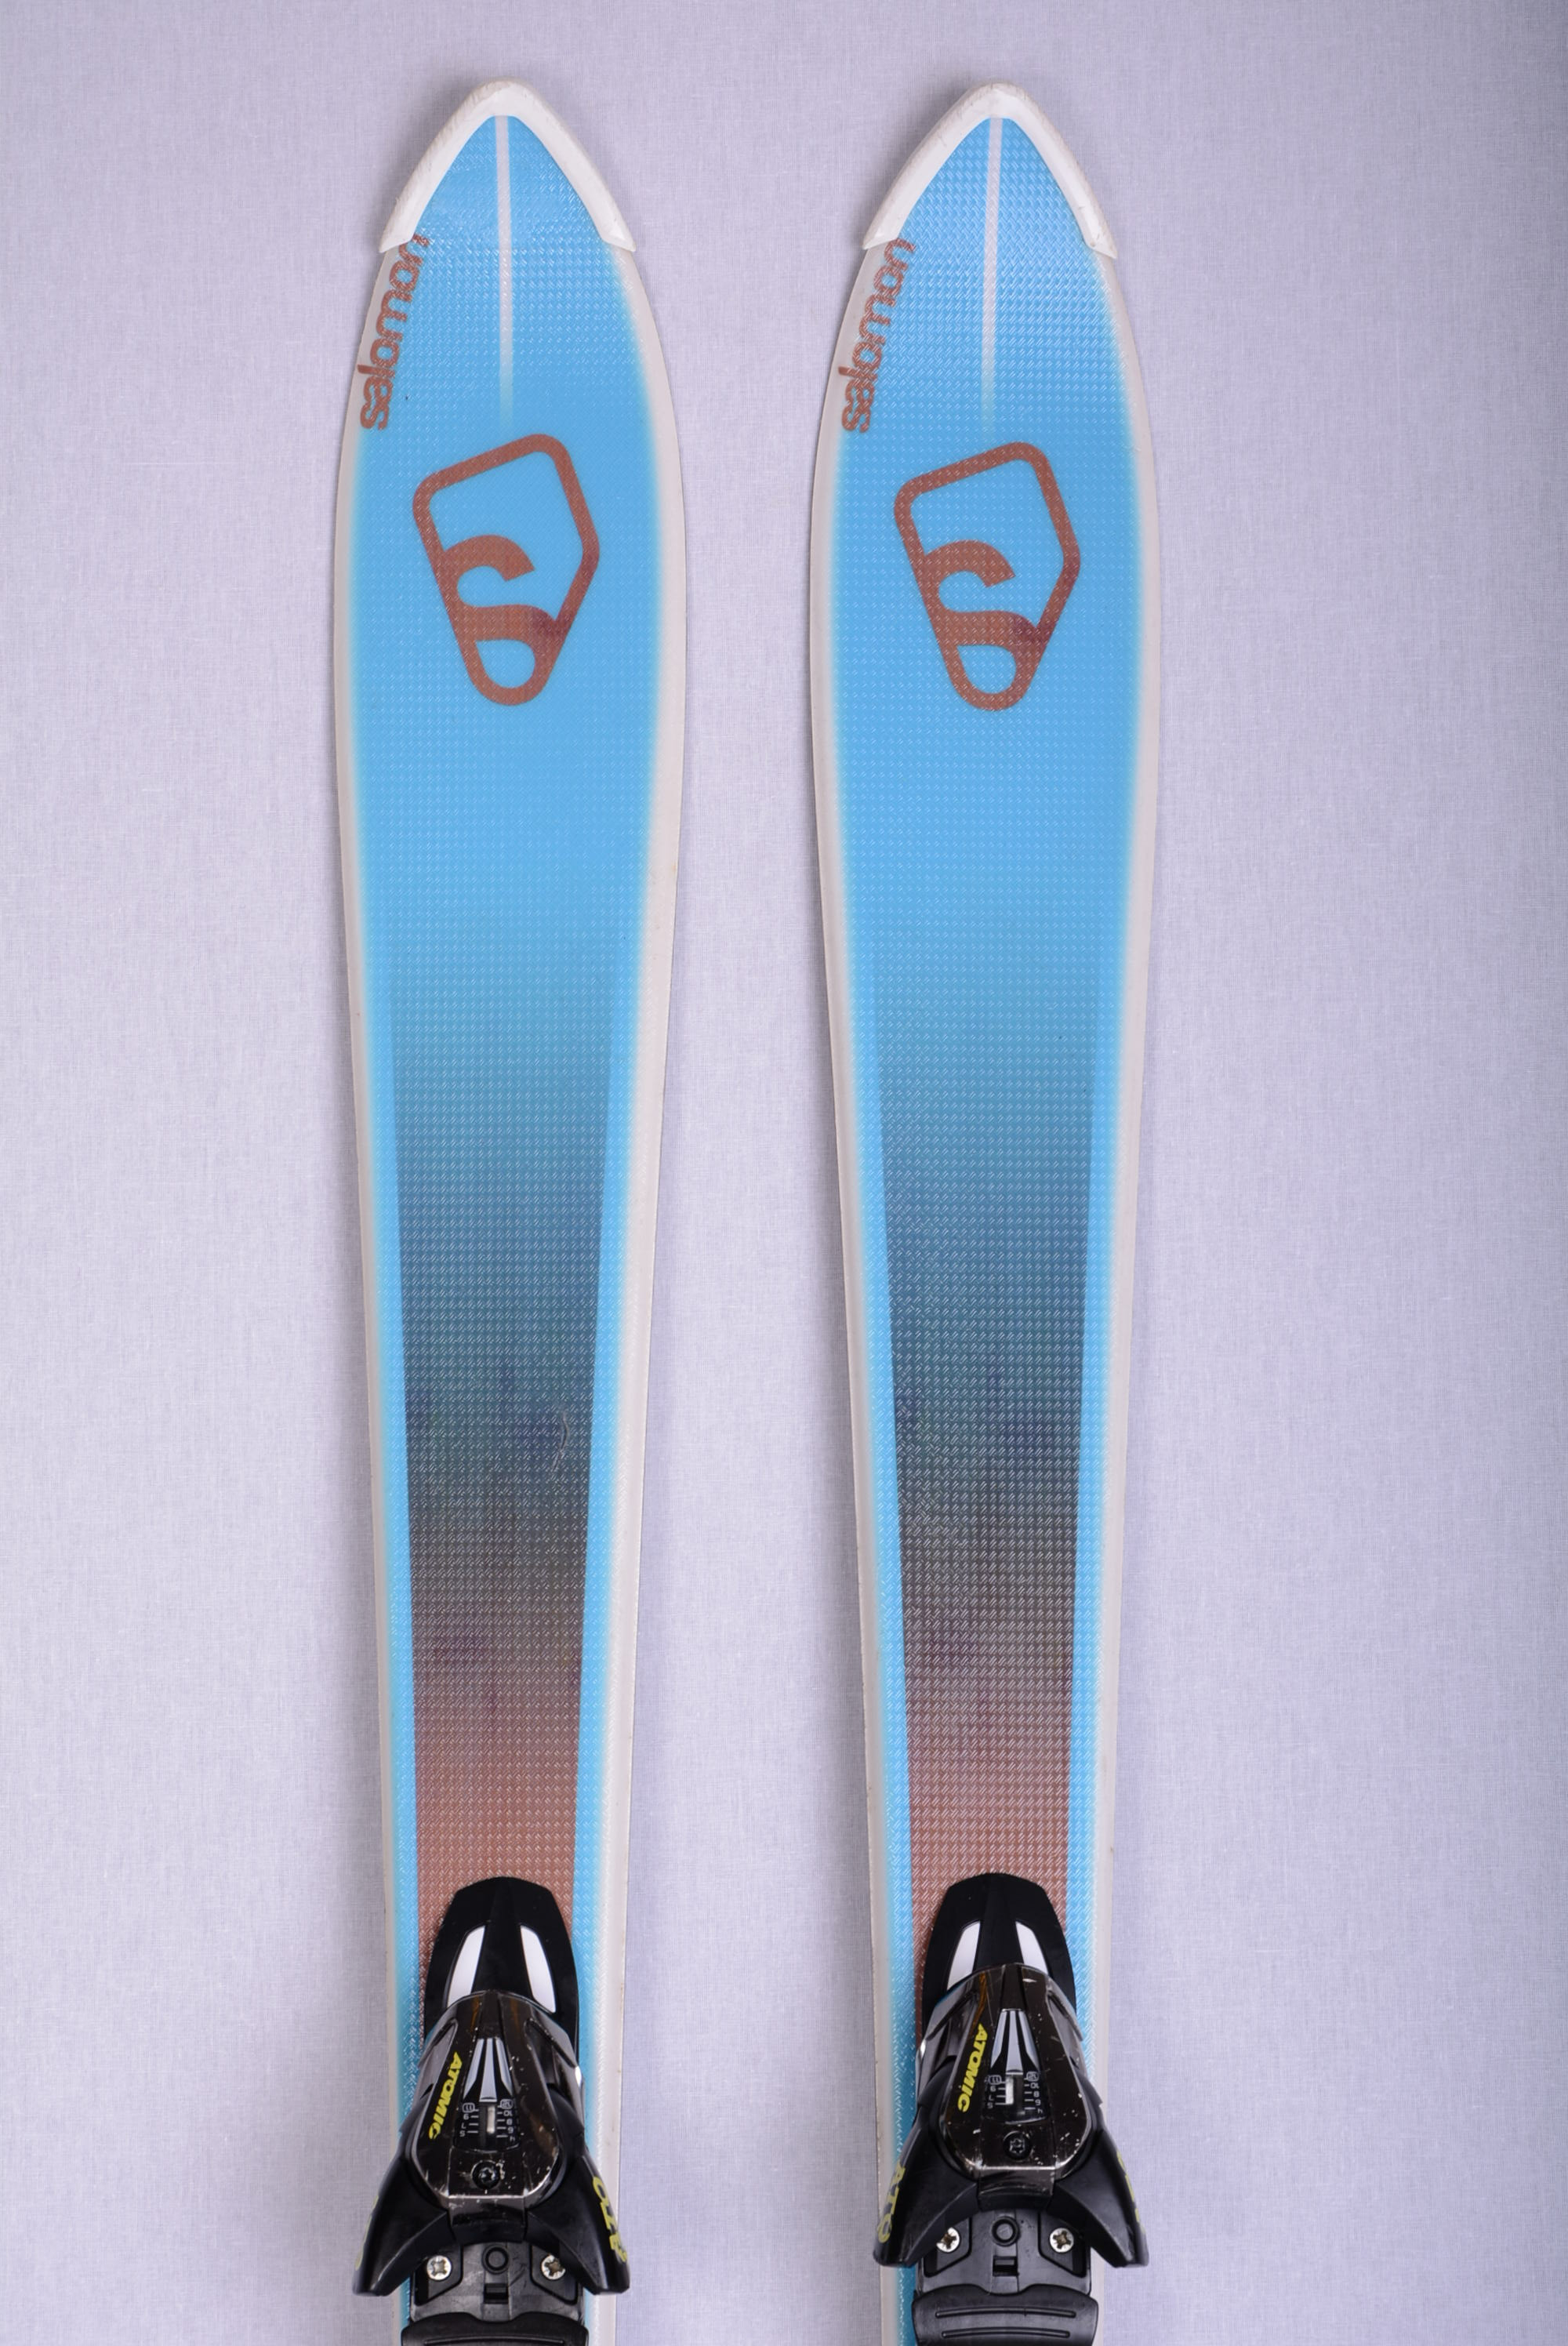 Bot september Ploeg skis SALOMON BBR 7.5 Vshape, Woodcore + Salomon Z10 ( like NEW ) -  Mardosport.co.uk